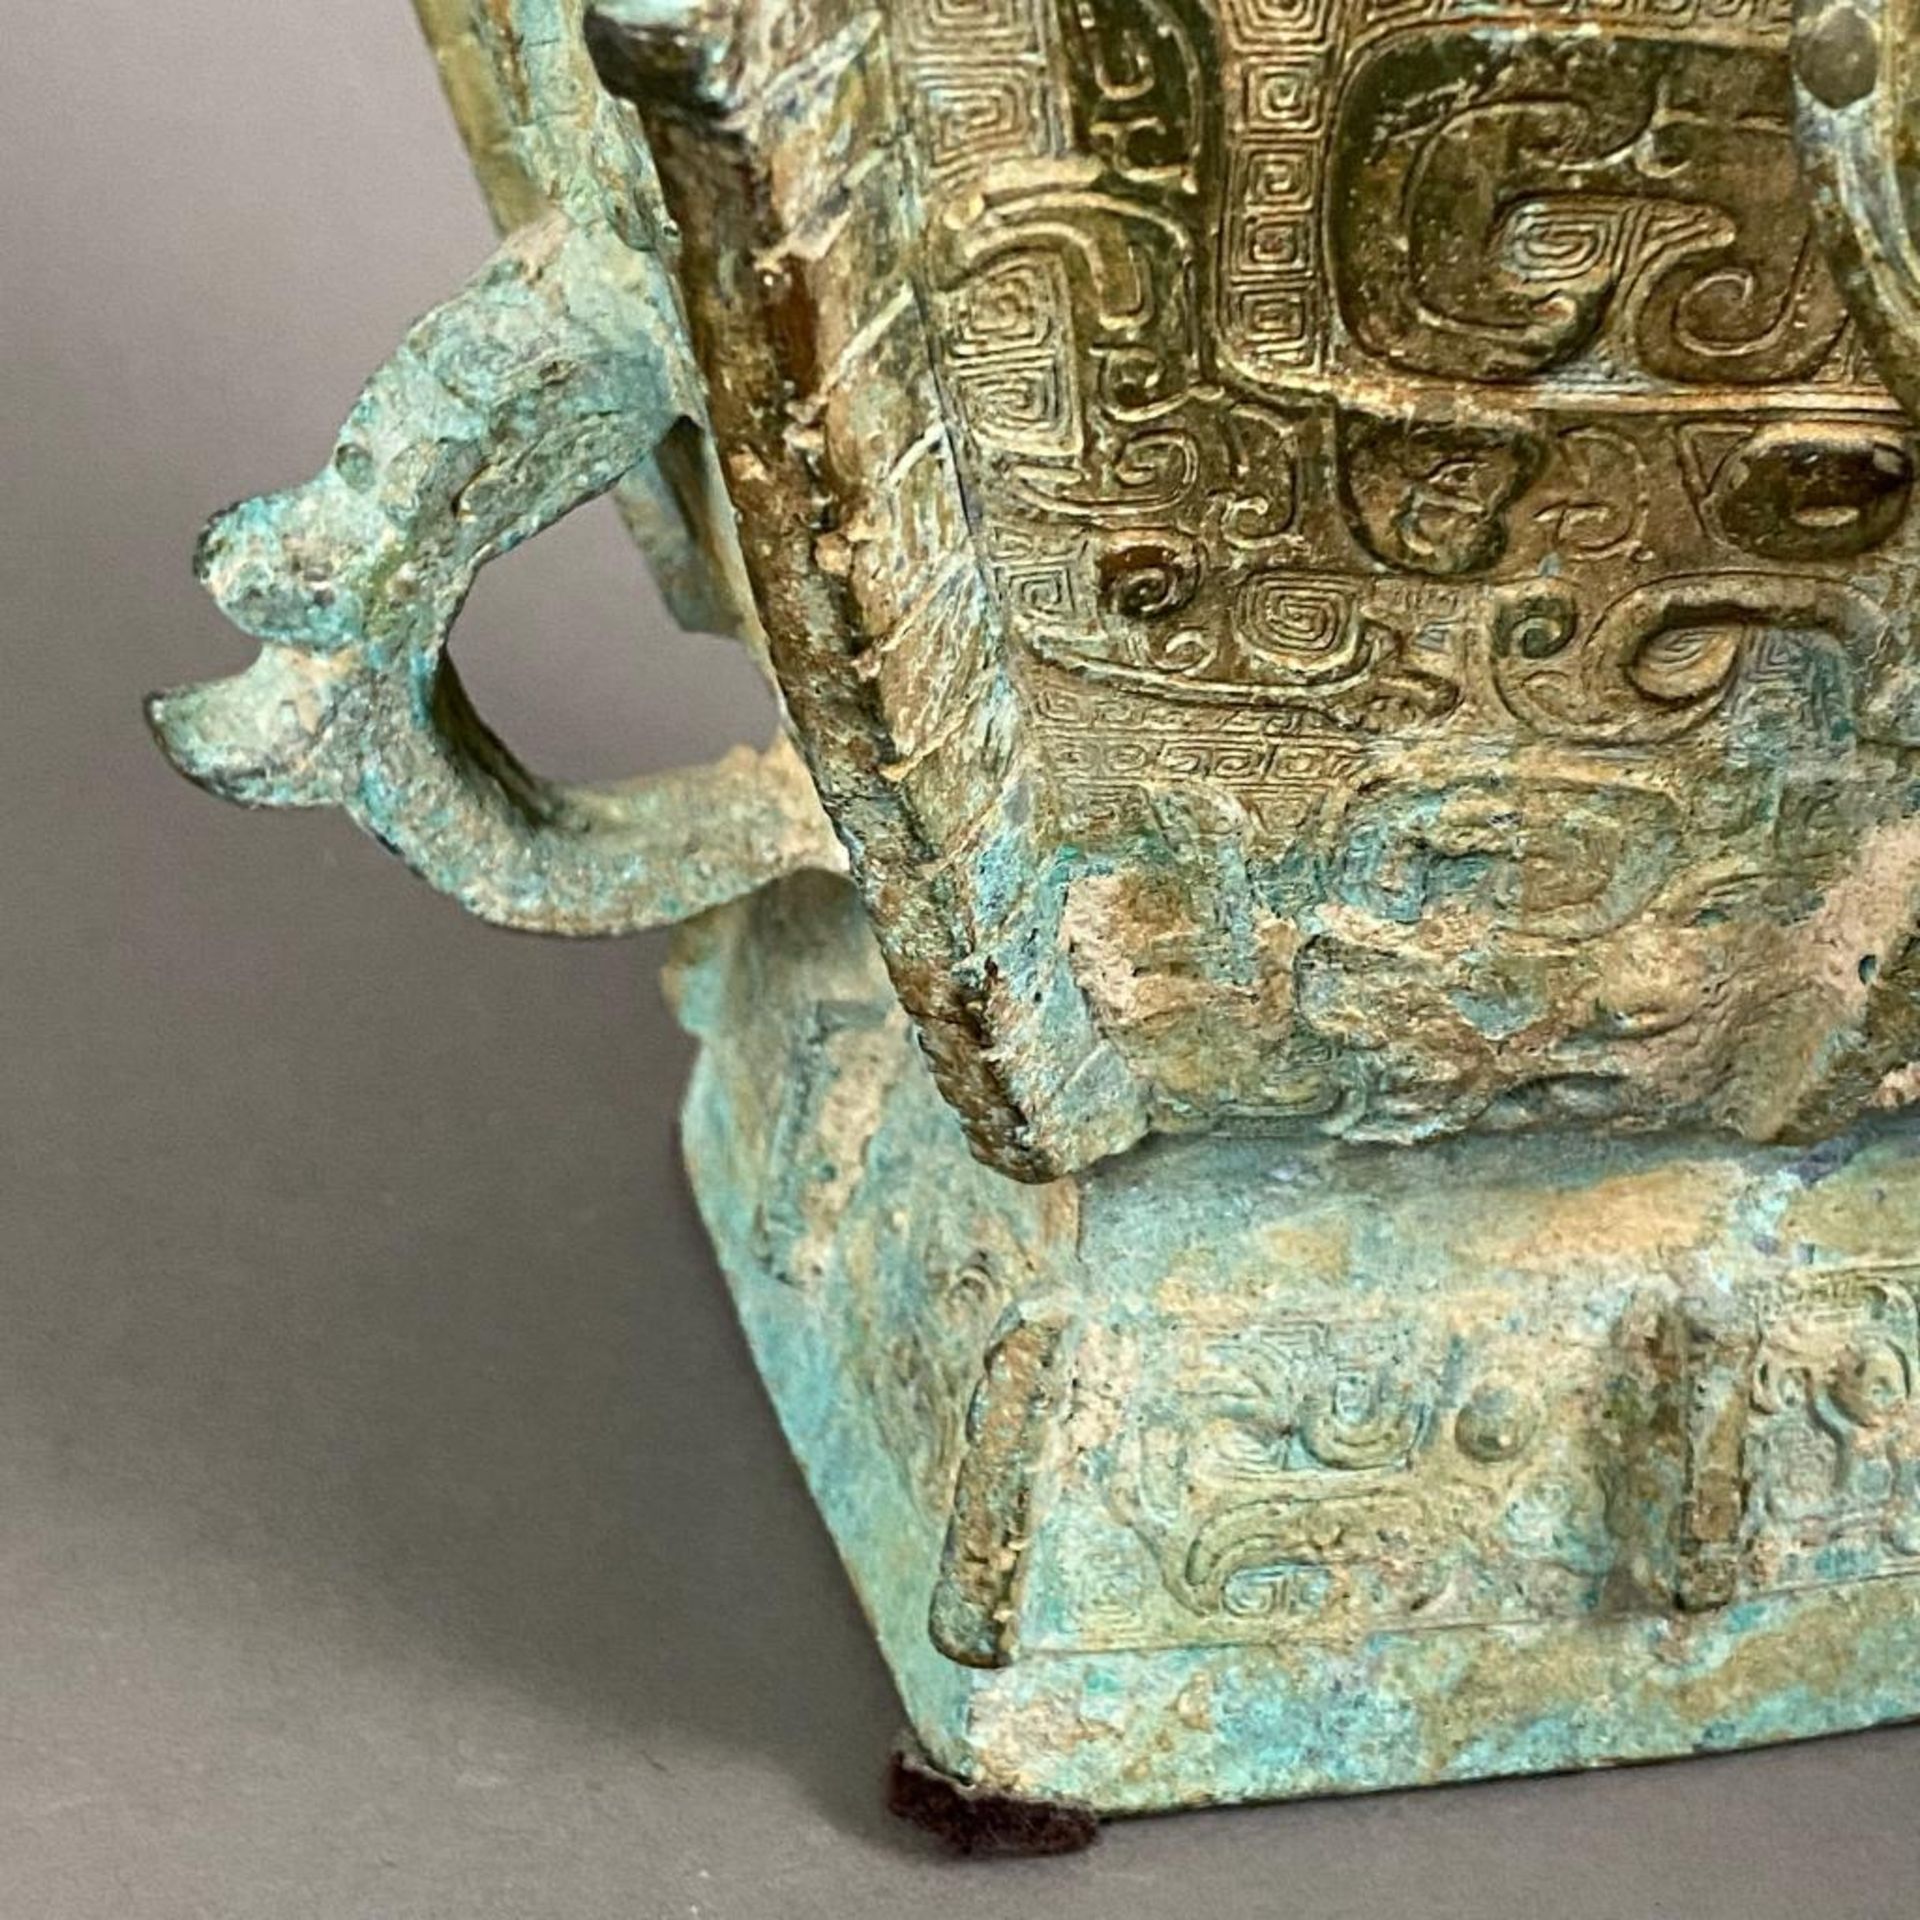 Fanghu-Vase im archaischen Stil - China, grün-braun patinierte Bronze, vierkantige gebauchte Form a - Bild 9 aus 10